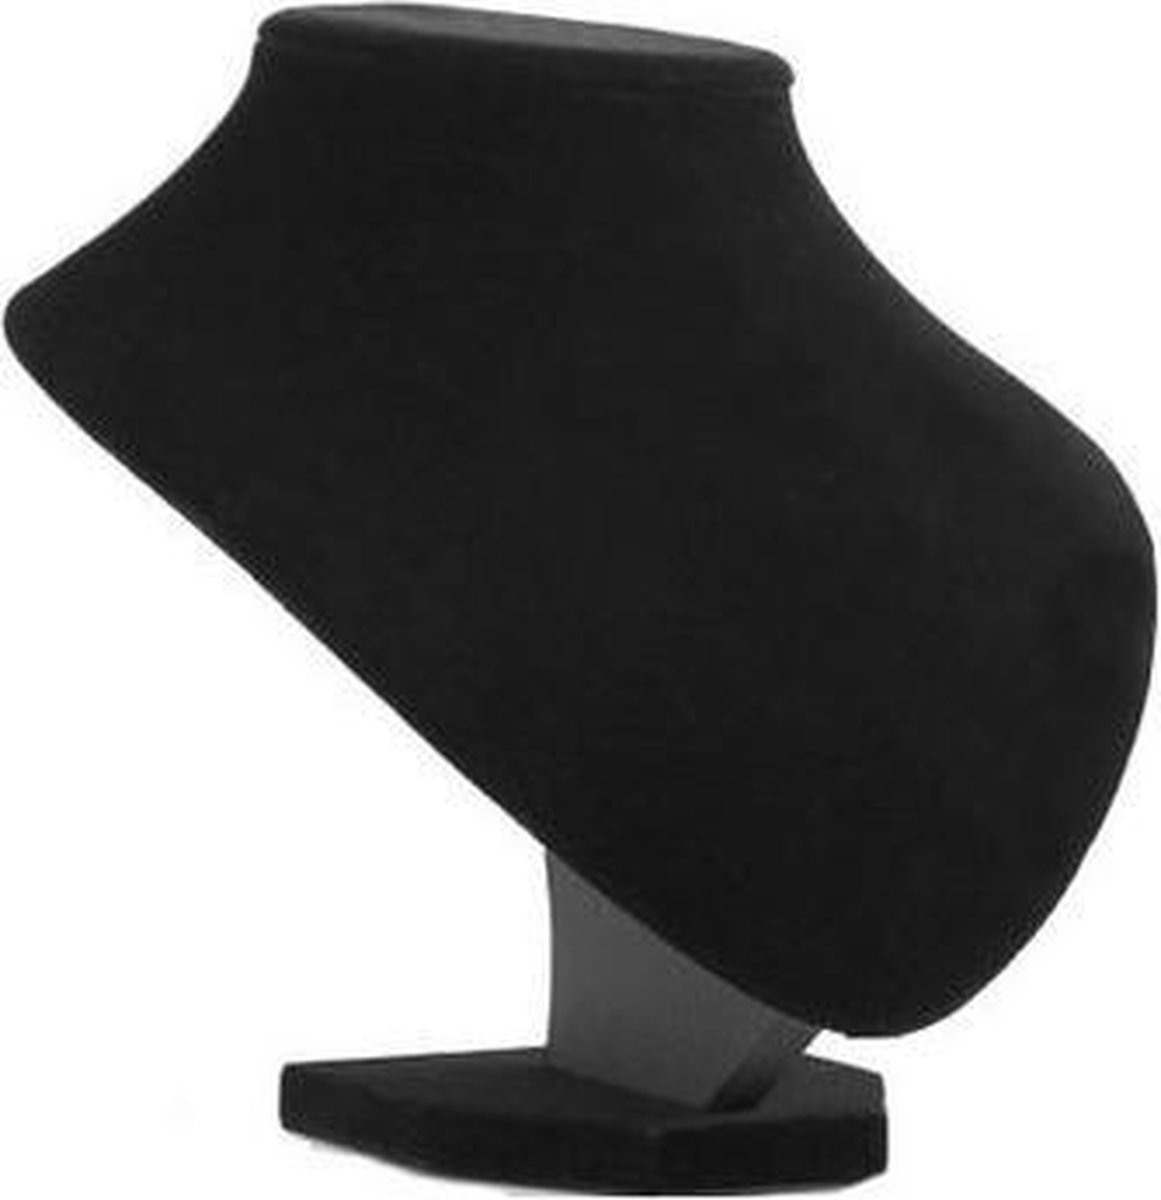 Sieraden display fluweel zwart 18 cm hoog